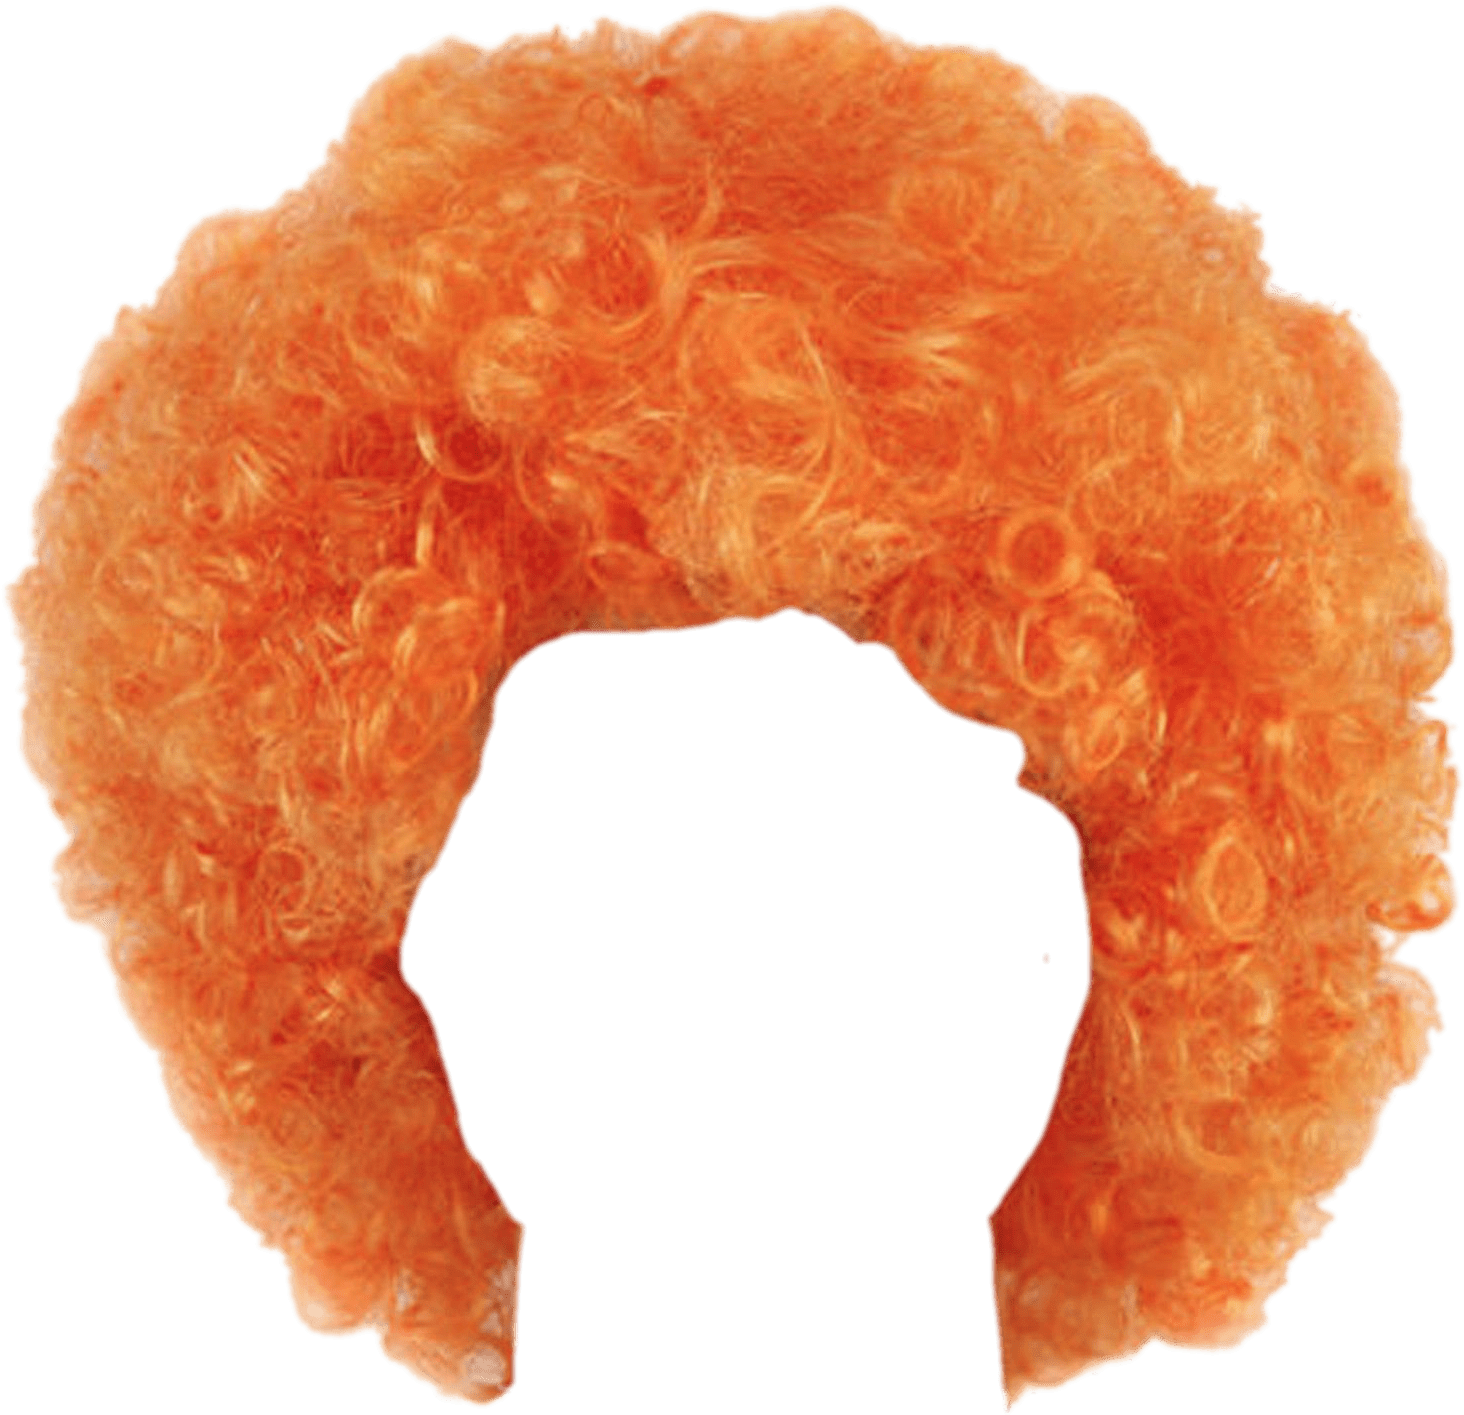 时尚橙色爆炸头短卷发假发发型装饰元素